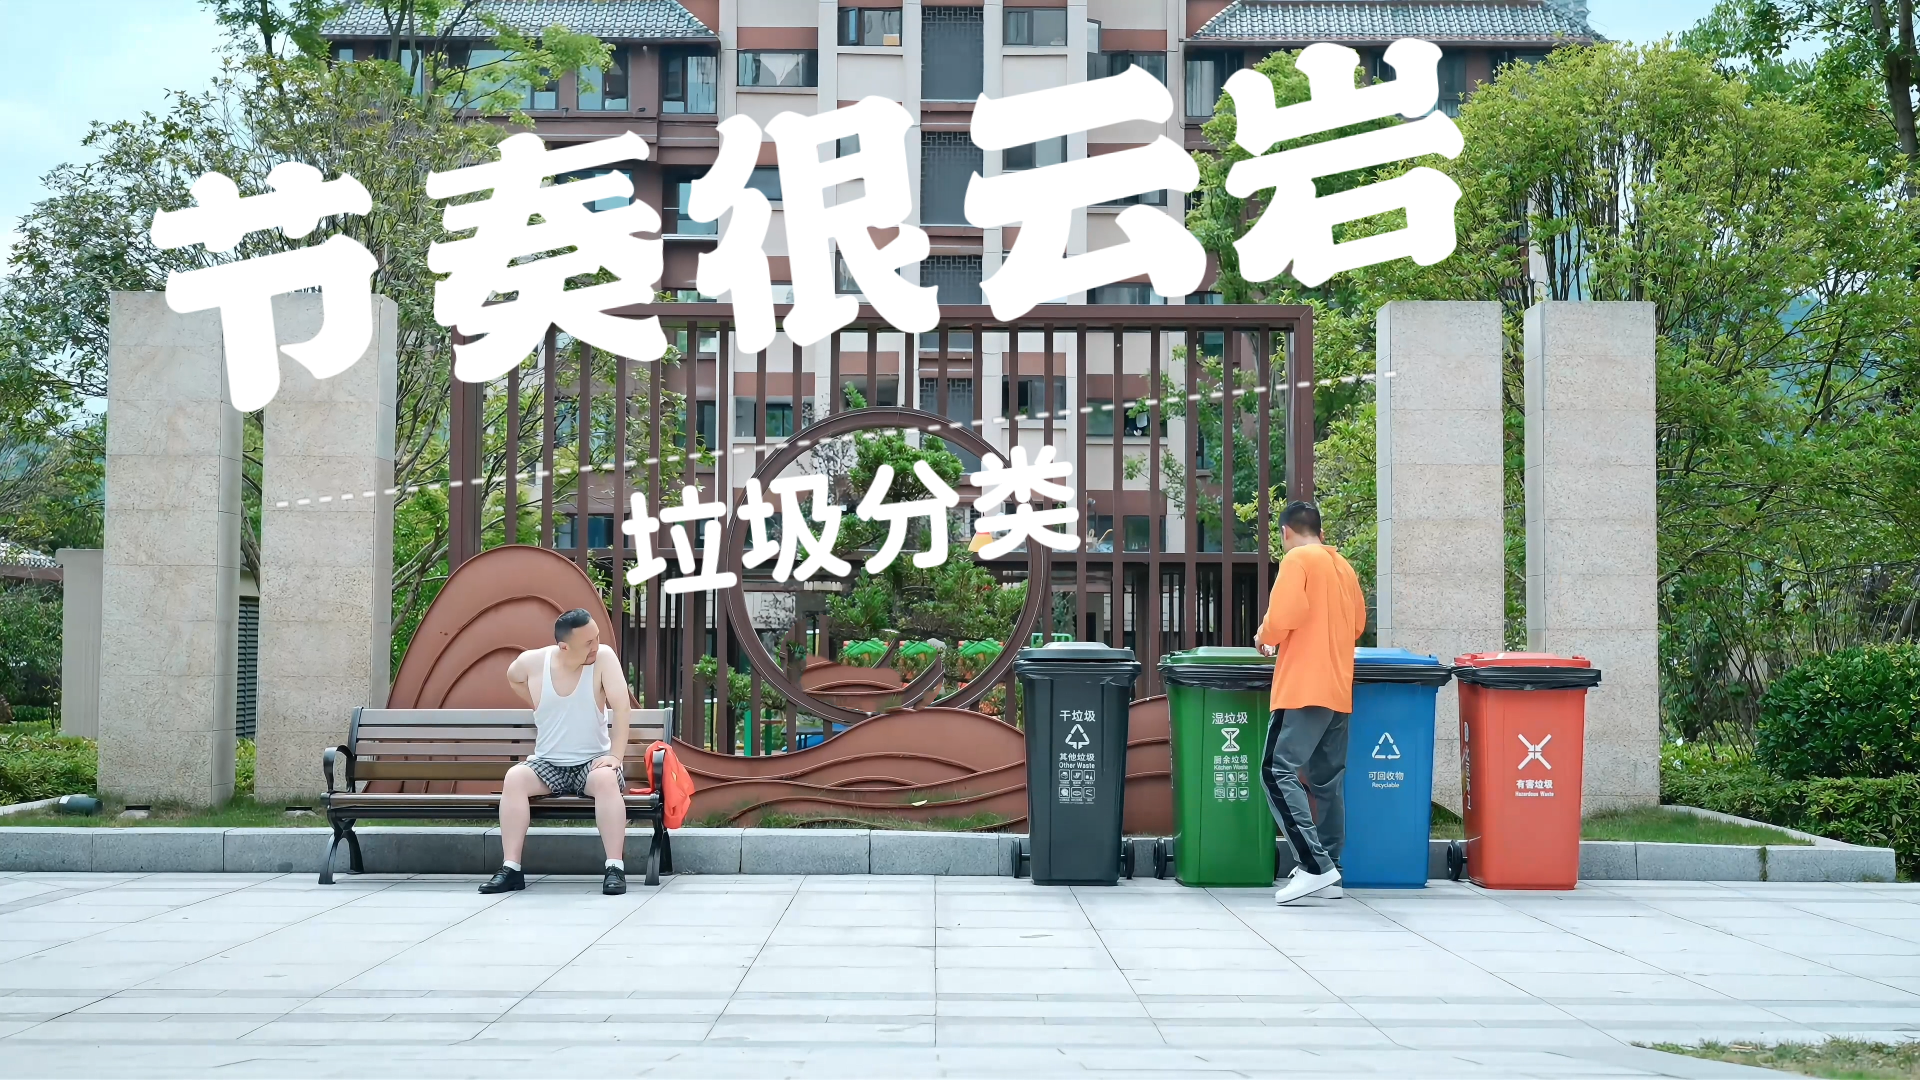 《节奏很云岩——垃圾分类》丨贵州省首届社会主义核心价值观主题微电影(微视频)征集展示活动作品